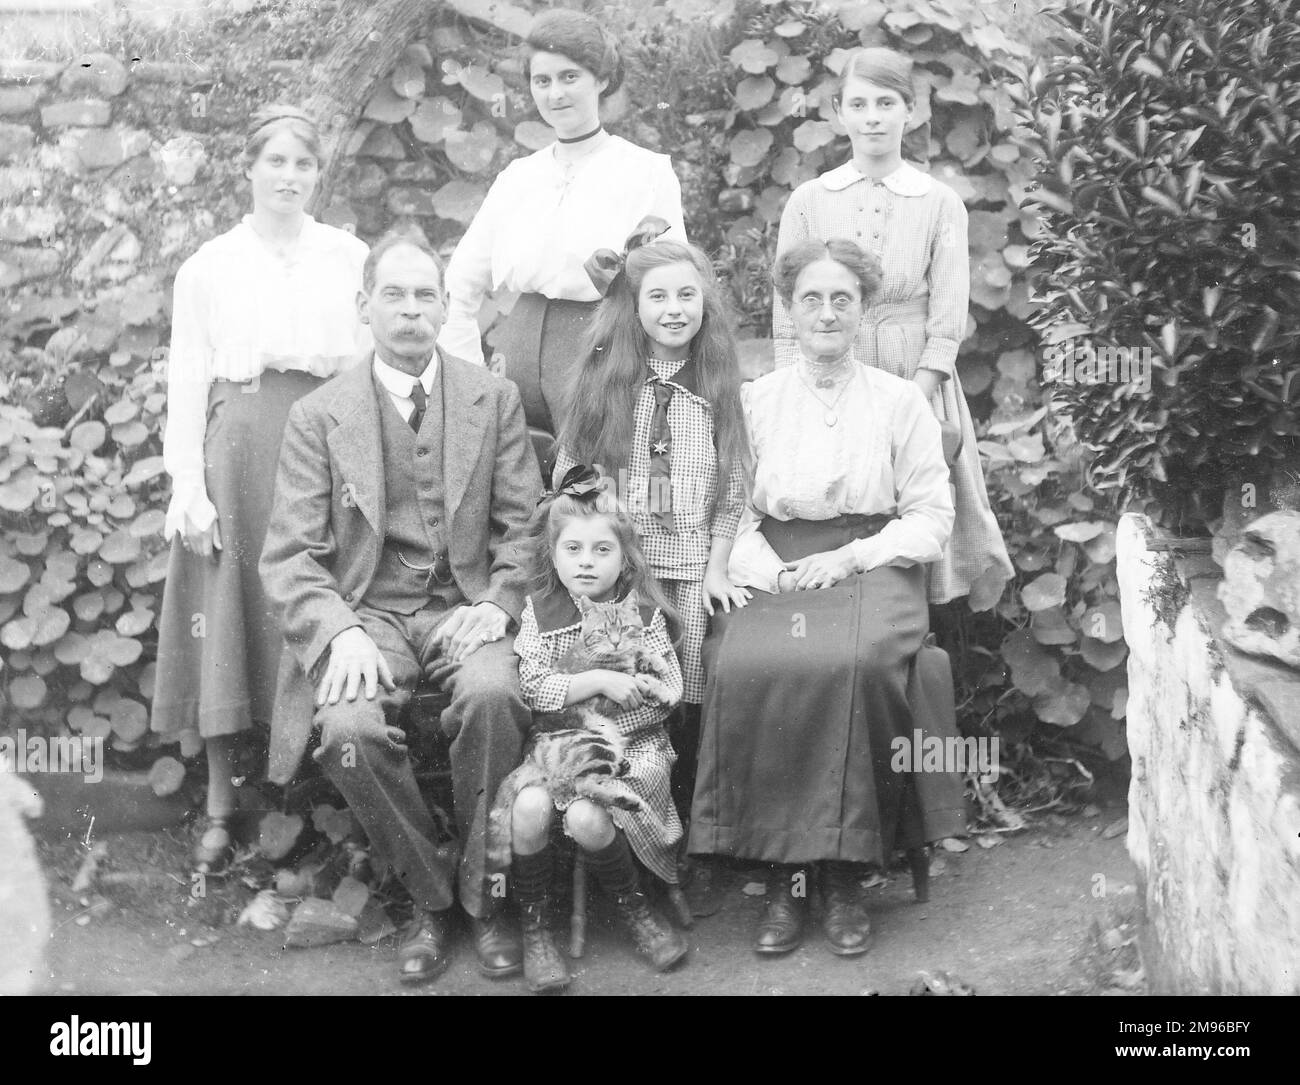 Eine edwardianische Familie der Mittelklasse posiert für ein Gruppenfoto in einem Garten, wahrscheinlich in der Gegend von Mid Wales. Das kleine Mädchen in der Mitte hält eine Katze in den Armen. Stockfoto